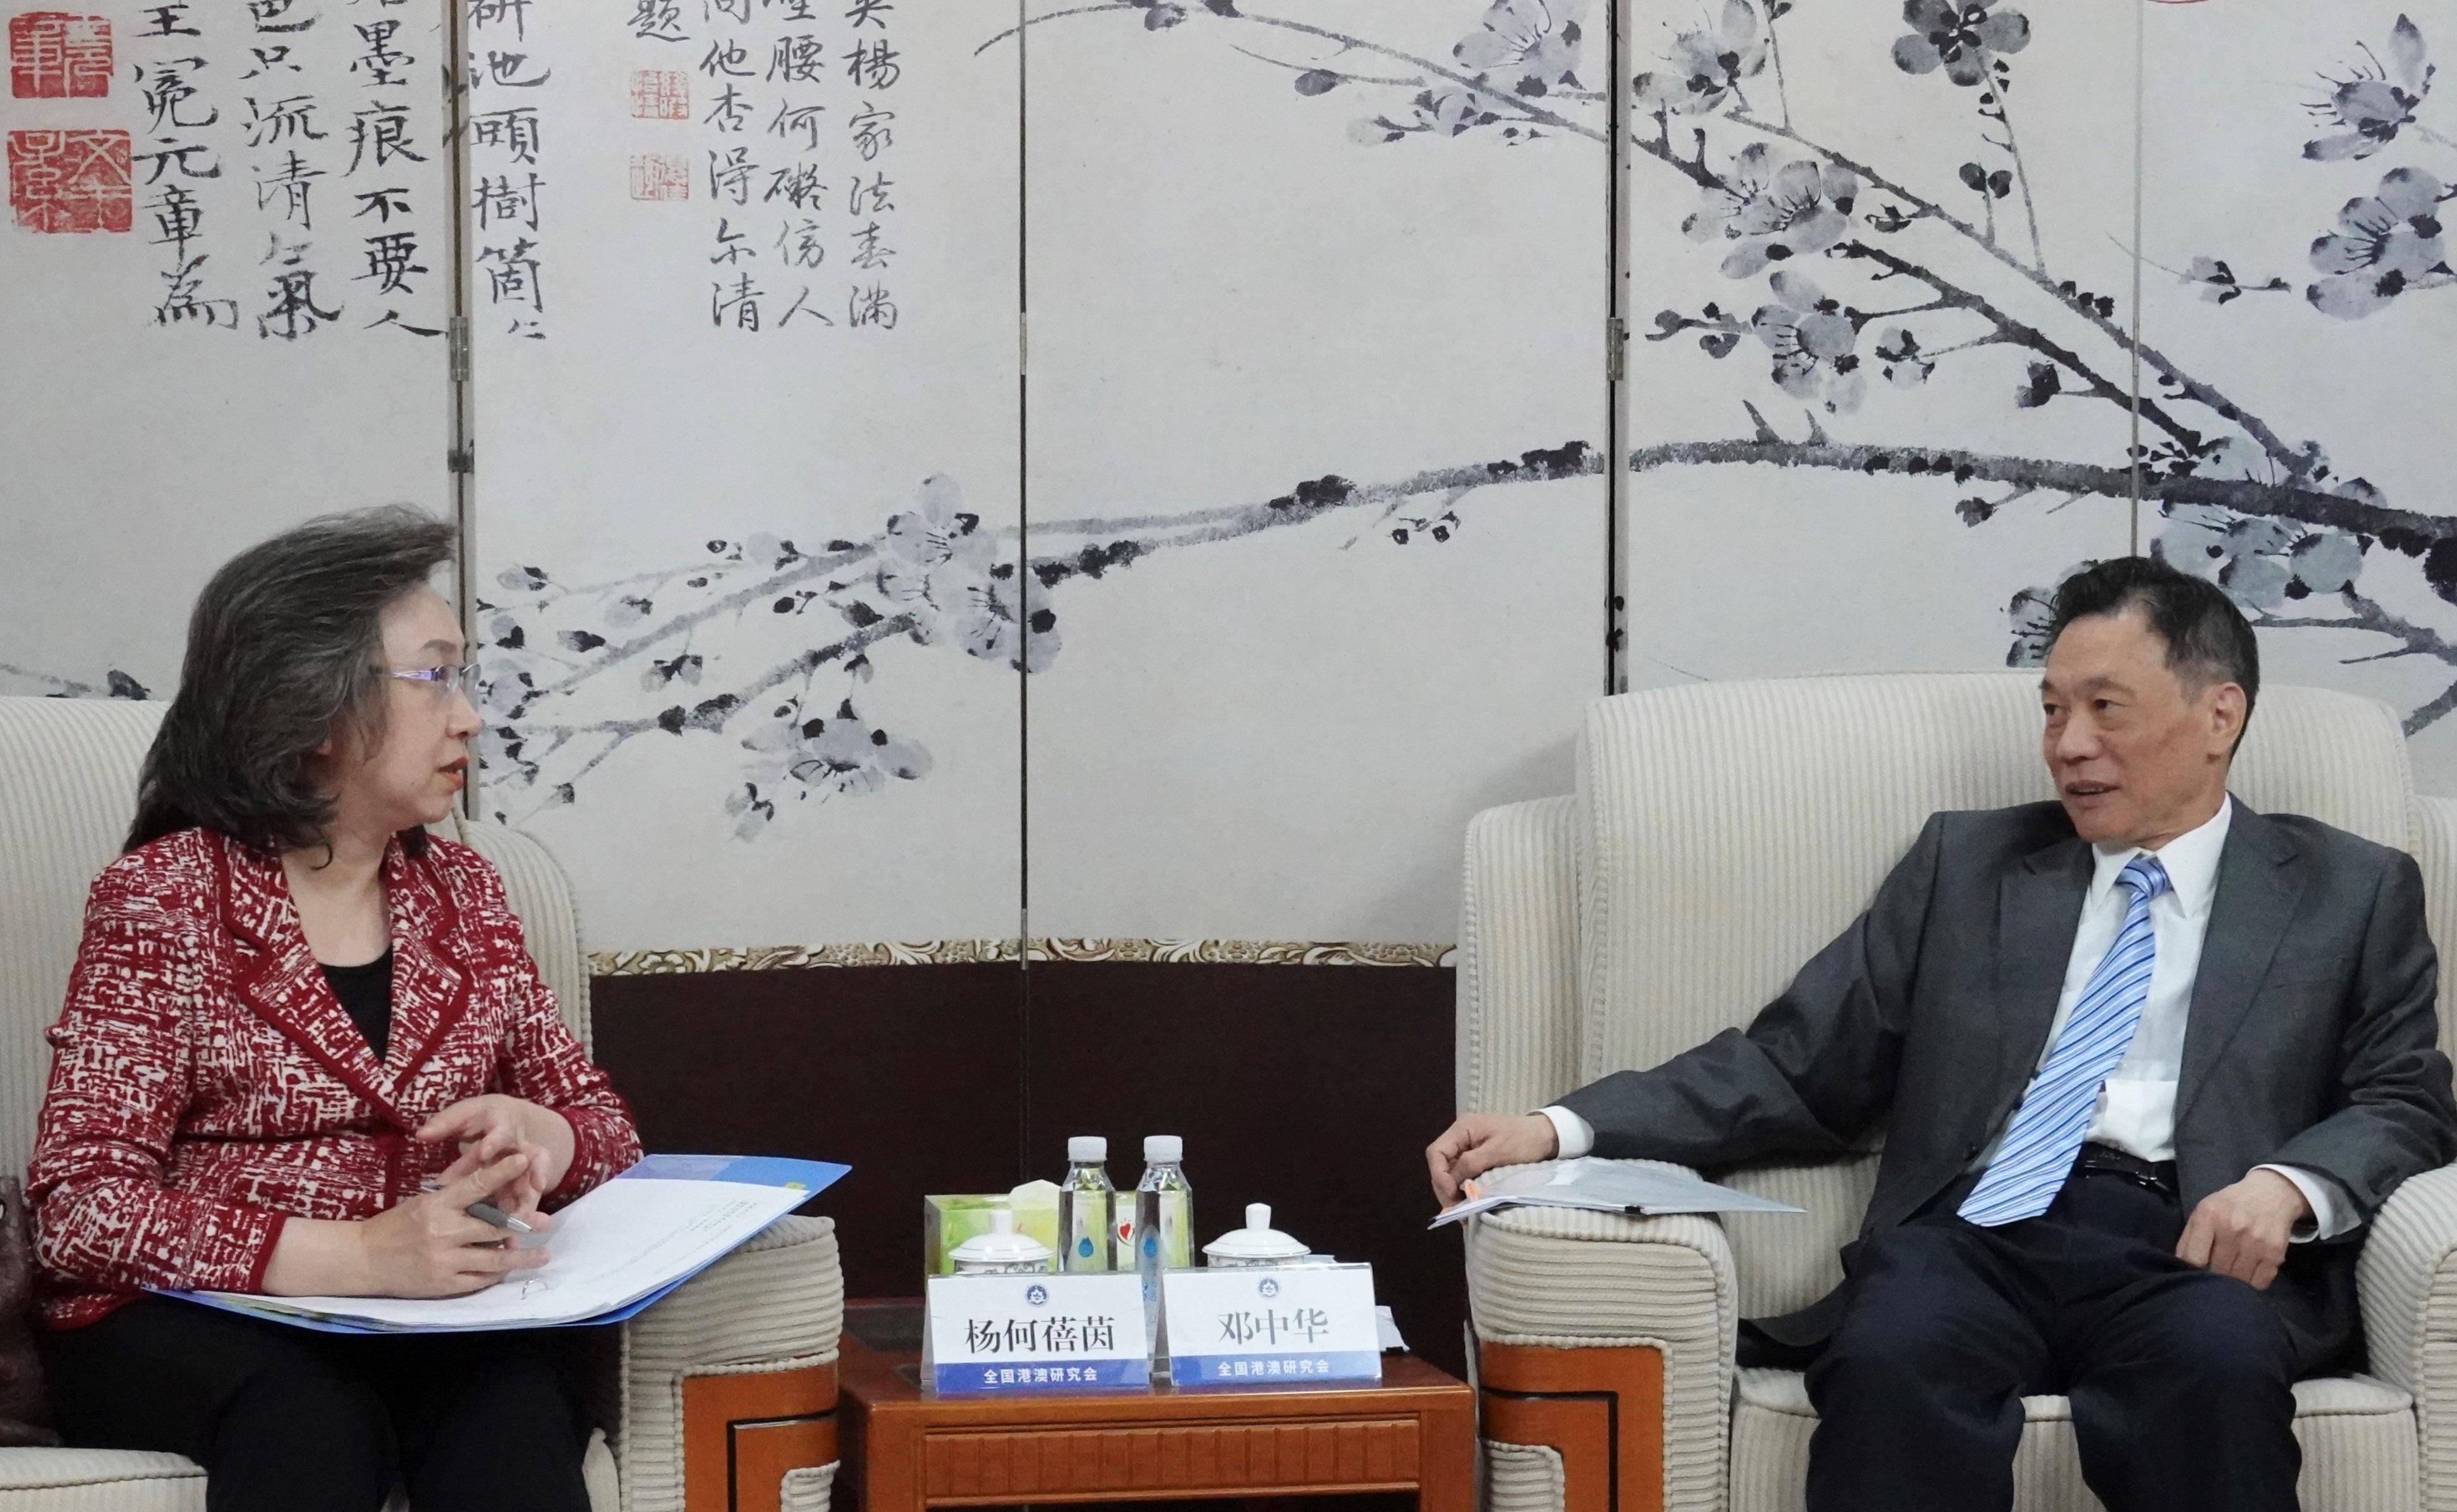 公务员事务局局长杨何蓓茵今日（四月二十六日）展开北京访问行程。图示杨何蓓茵（左）与全国港澳研究会会长邓中华（右）会面，介绍公务员学院的最新进展和交换意见。

